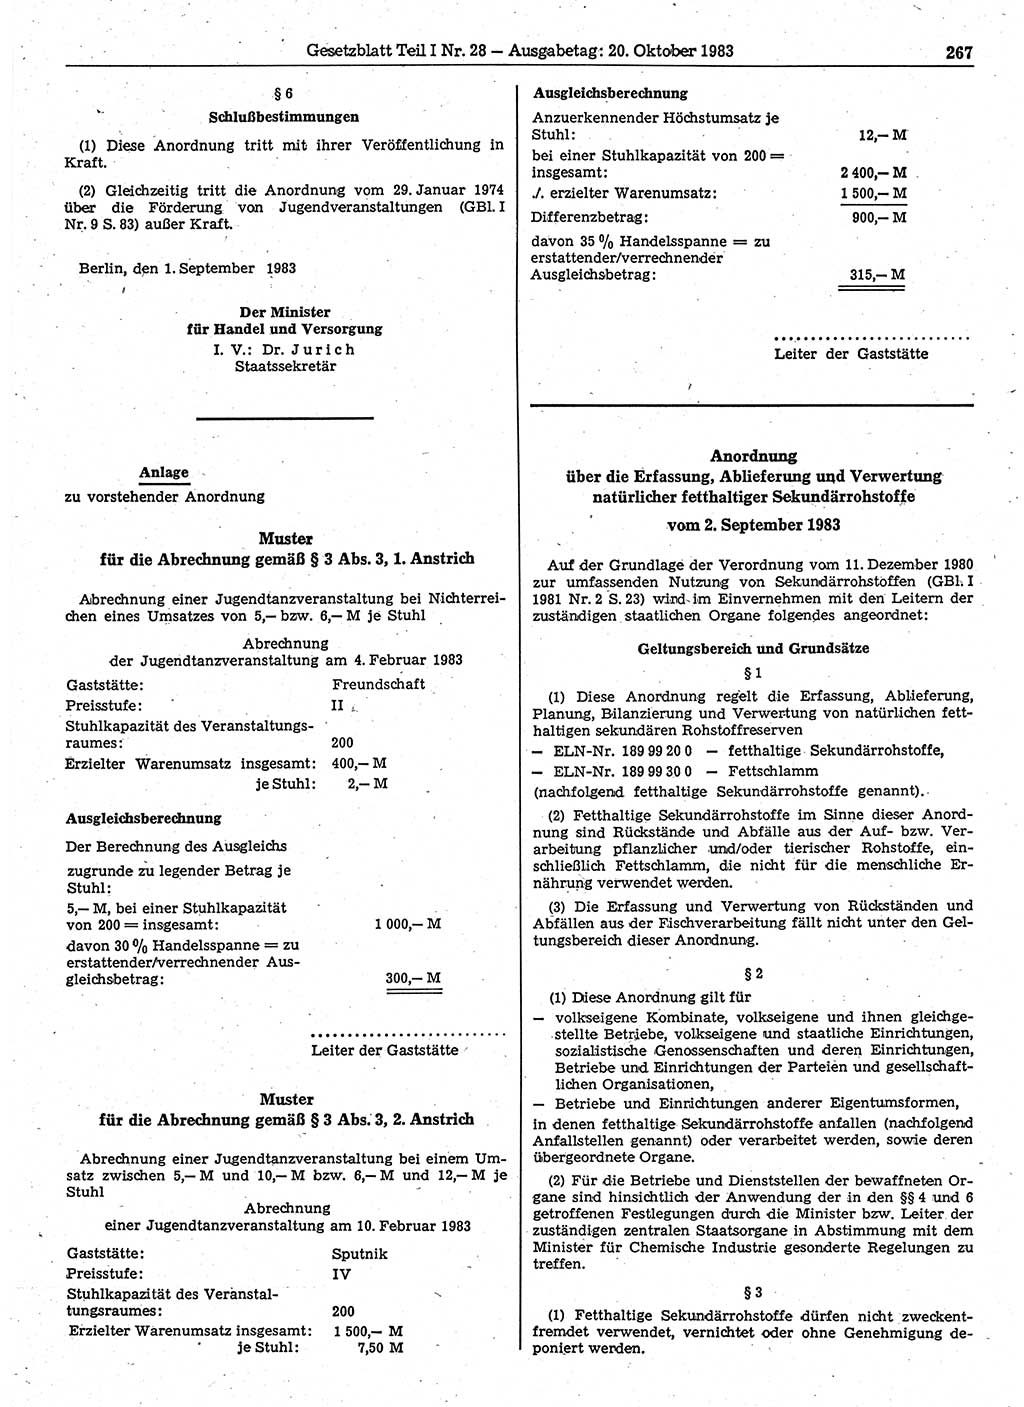 Gesetzblatt (GBl.) der Deutschen Demokratischen Republik (DDR) Teil Ⅰ 1983, Seite 267 (GBl. DDR Ⅰ 1983, S. 267)